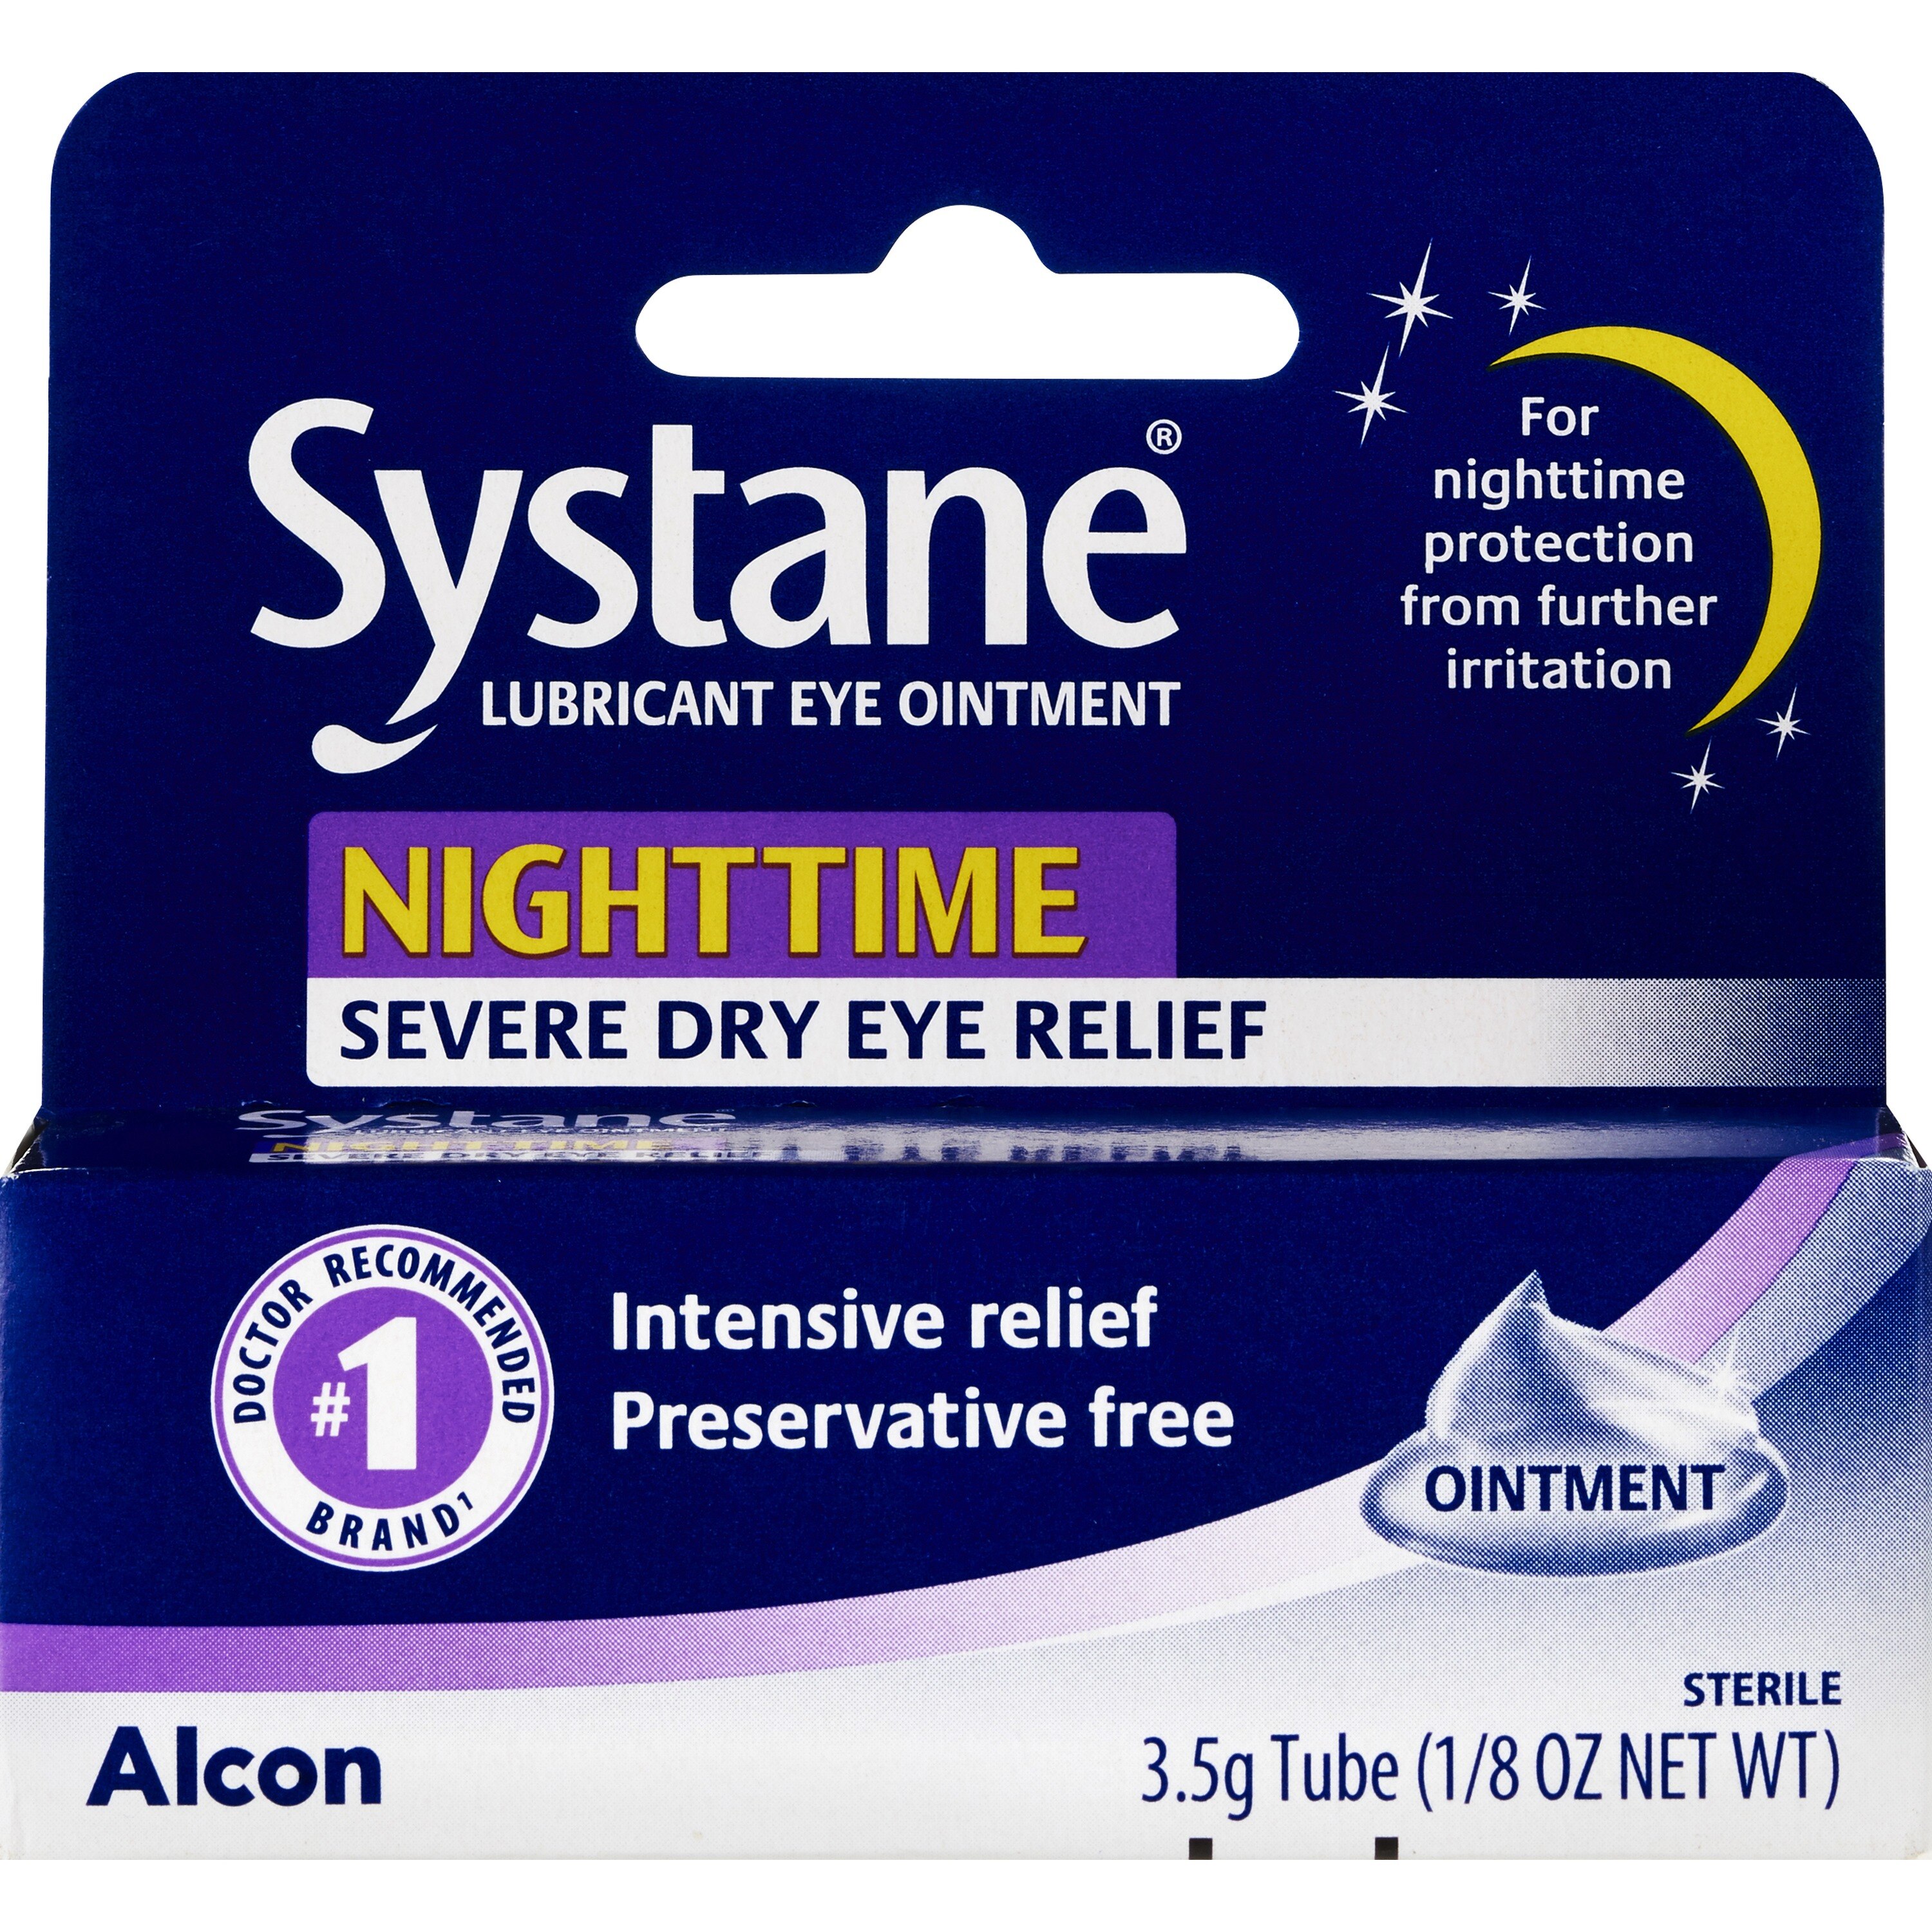 Systane Nighttime Lubricant Eye Ointment, 0.12 Fl Oz - 0.12 Oz , CVS